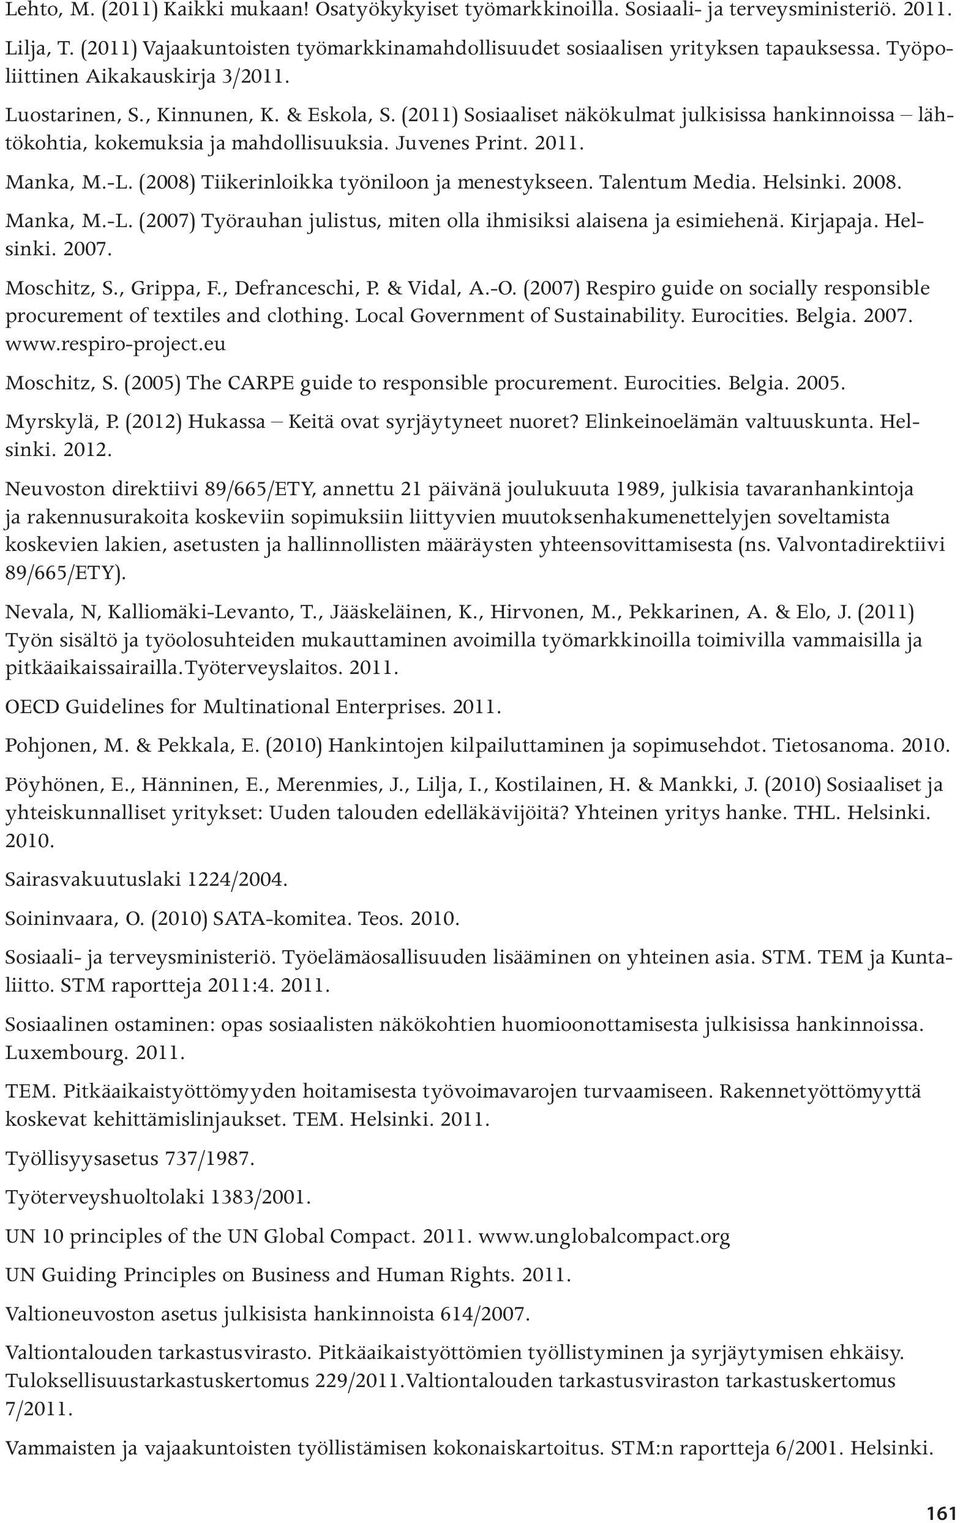 Manka, M.-L. (2008) Tiikerinloikka työniloon ja menestykseen. Talentum Media. Helsinki. 2008. Manka, M.-L. (2007) Työrauhan julistus, miten olla ihmisiksi alaisena ja esimiehenä. Kirjapaja. Helsinki. 2007.